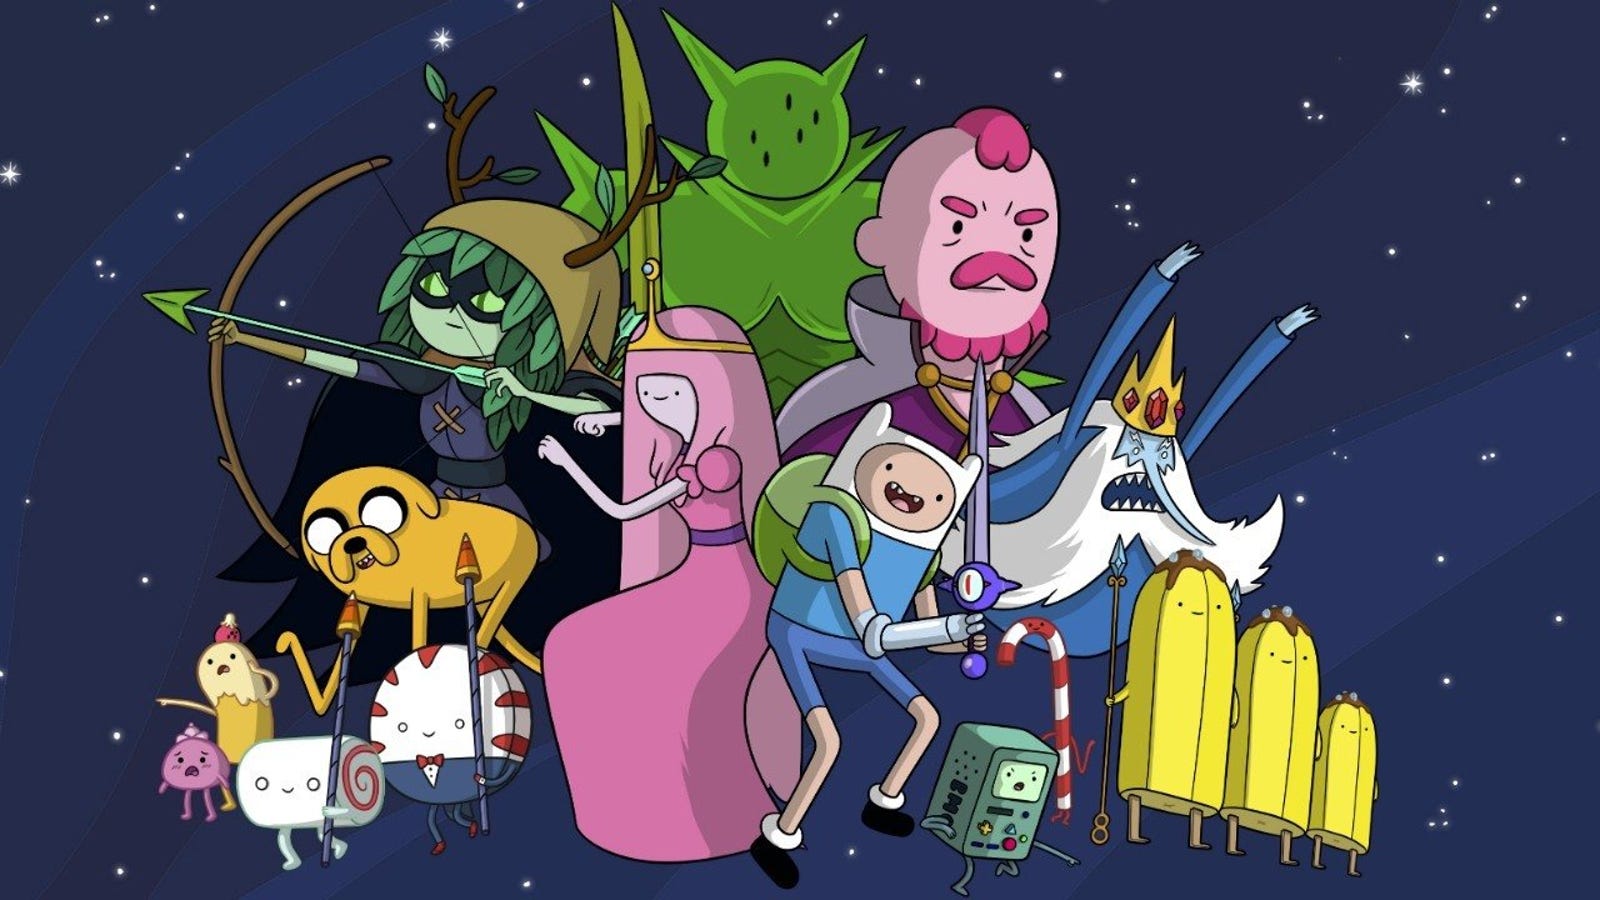 Adventure Time: Với Adventure Time, bạn sẽ được trải nghiệm một cuộc phiêu lưu đầy hấp dẫn cùng những nhân vật đầy sáng tạo và táo bạo. Bạn sẽ nhận ra rằng mọi thứ đều có thể xảy ra trong thế giới hoang dã này. Phim rất thích hợp cho các bạn trẻ và được khuyến khích cho việc giải trí gia đình.